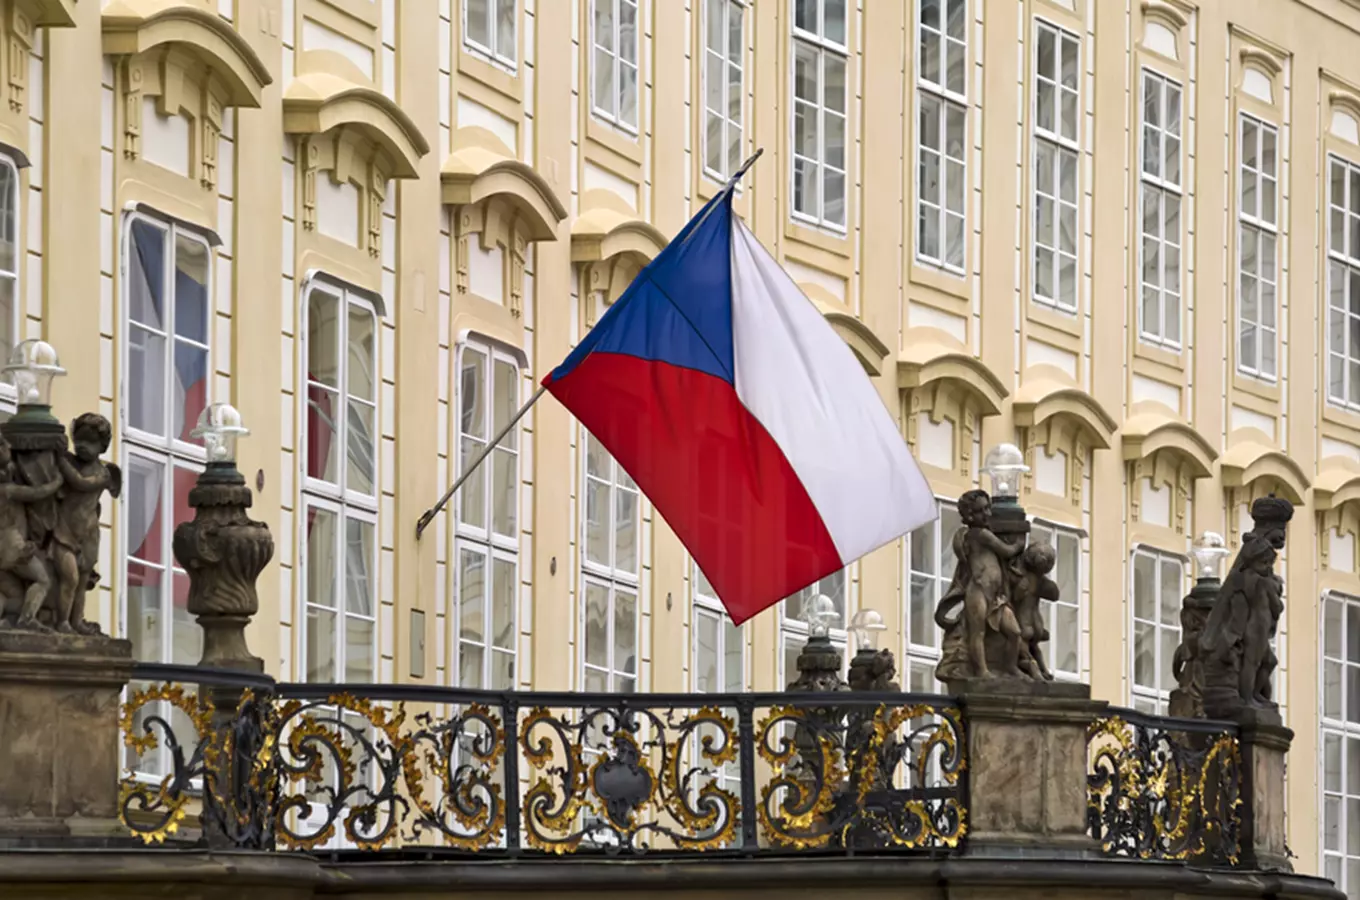 Den vzniku samostatného československého státu 